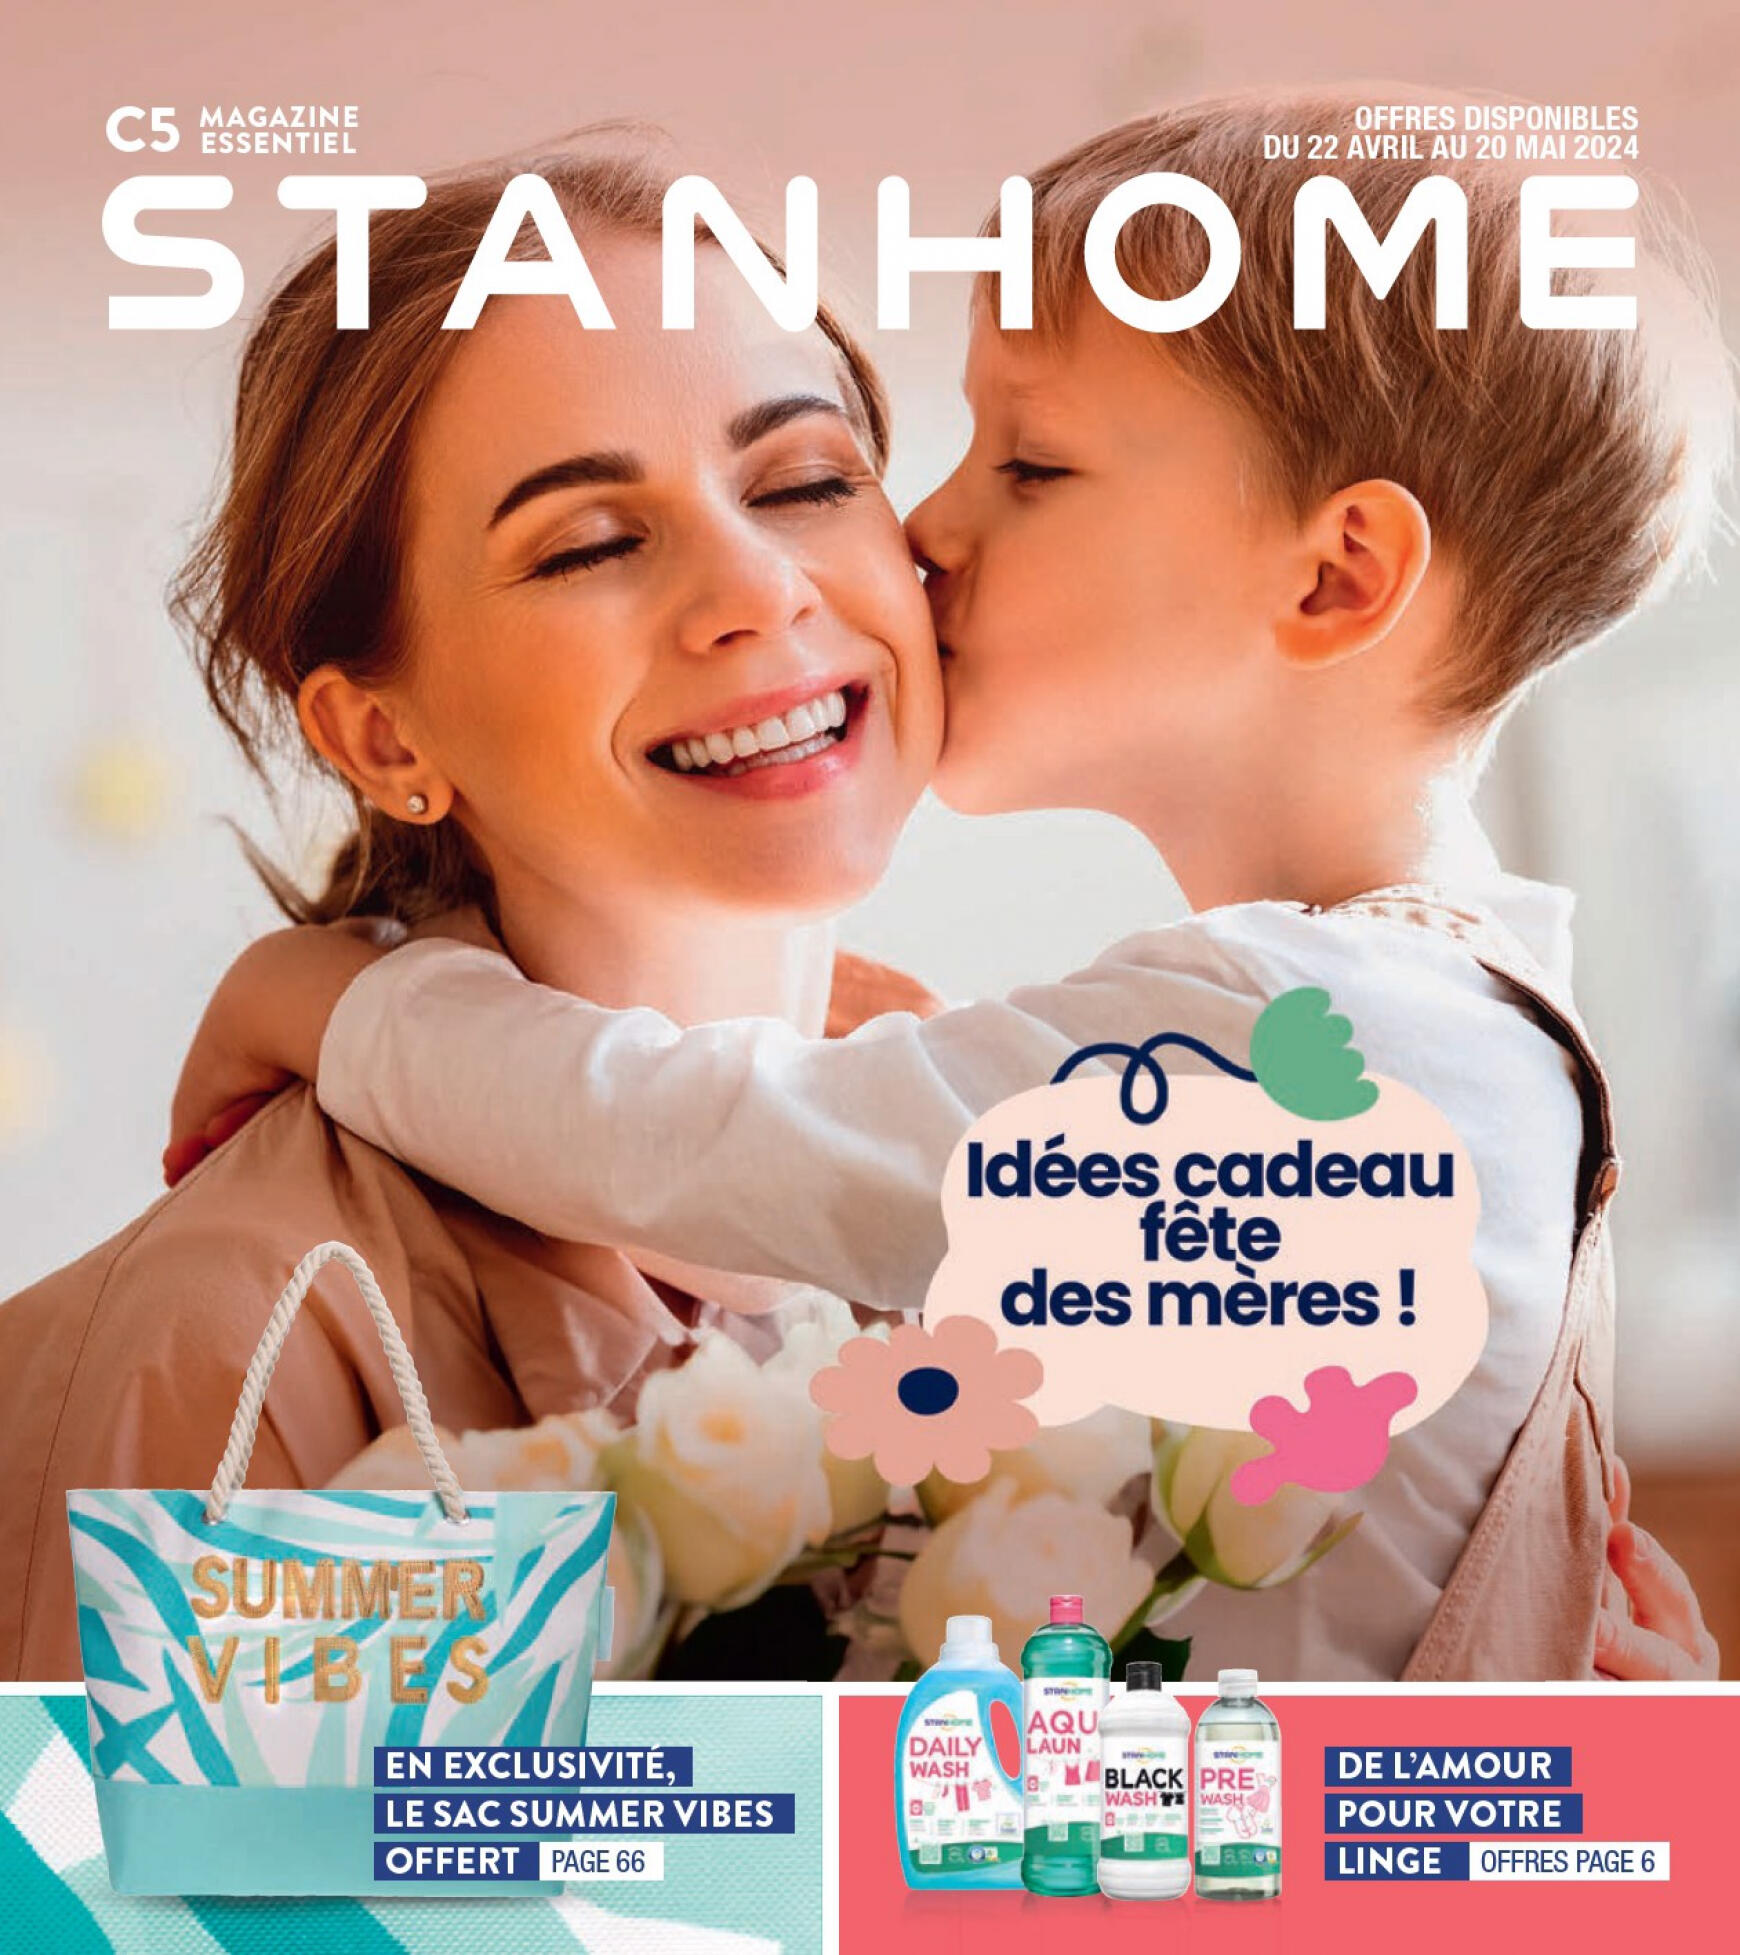 stanhome - Prospectus Stanhome - L'Essentiel du mois actuel 22.04. - 20.05.